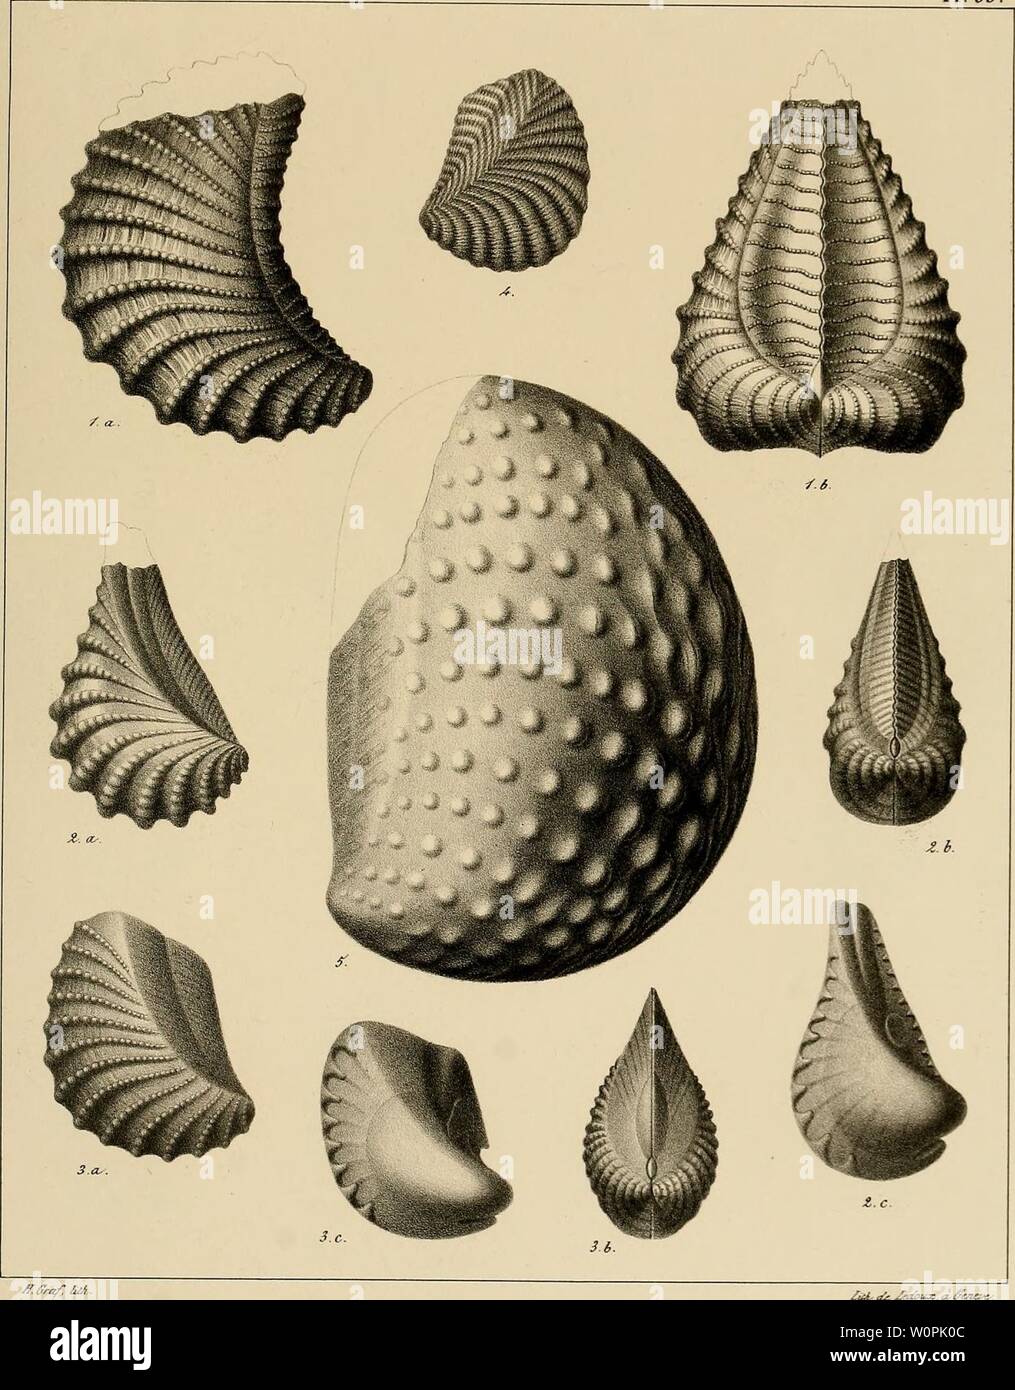 Archive image from page 74 of Description des mollusques fossiles qui. Description des mollusques fossiles qui se trouvent dans les grès verts des environs de Genève descriptiondesmo01pict Year: 1847-1853  PI. 35.    Ar.ffr, ua ¥. 1 a:2.TrToma aliformis. Ti. 3.T. Constantii. Fi. 4.T. Archiaciana. Fid.S.T. uodosa. Stock Photo